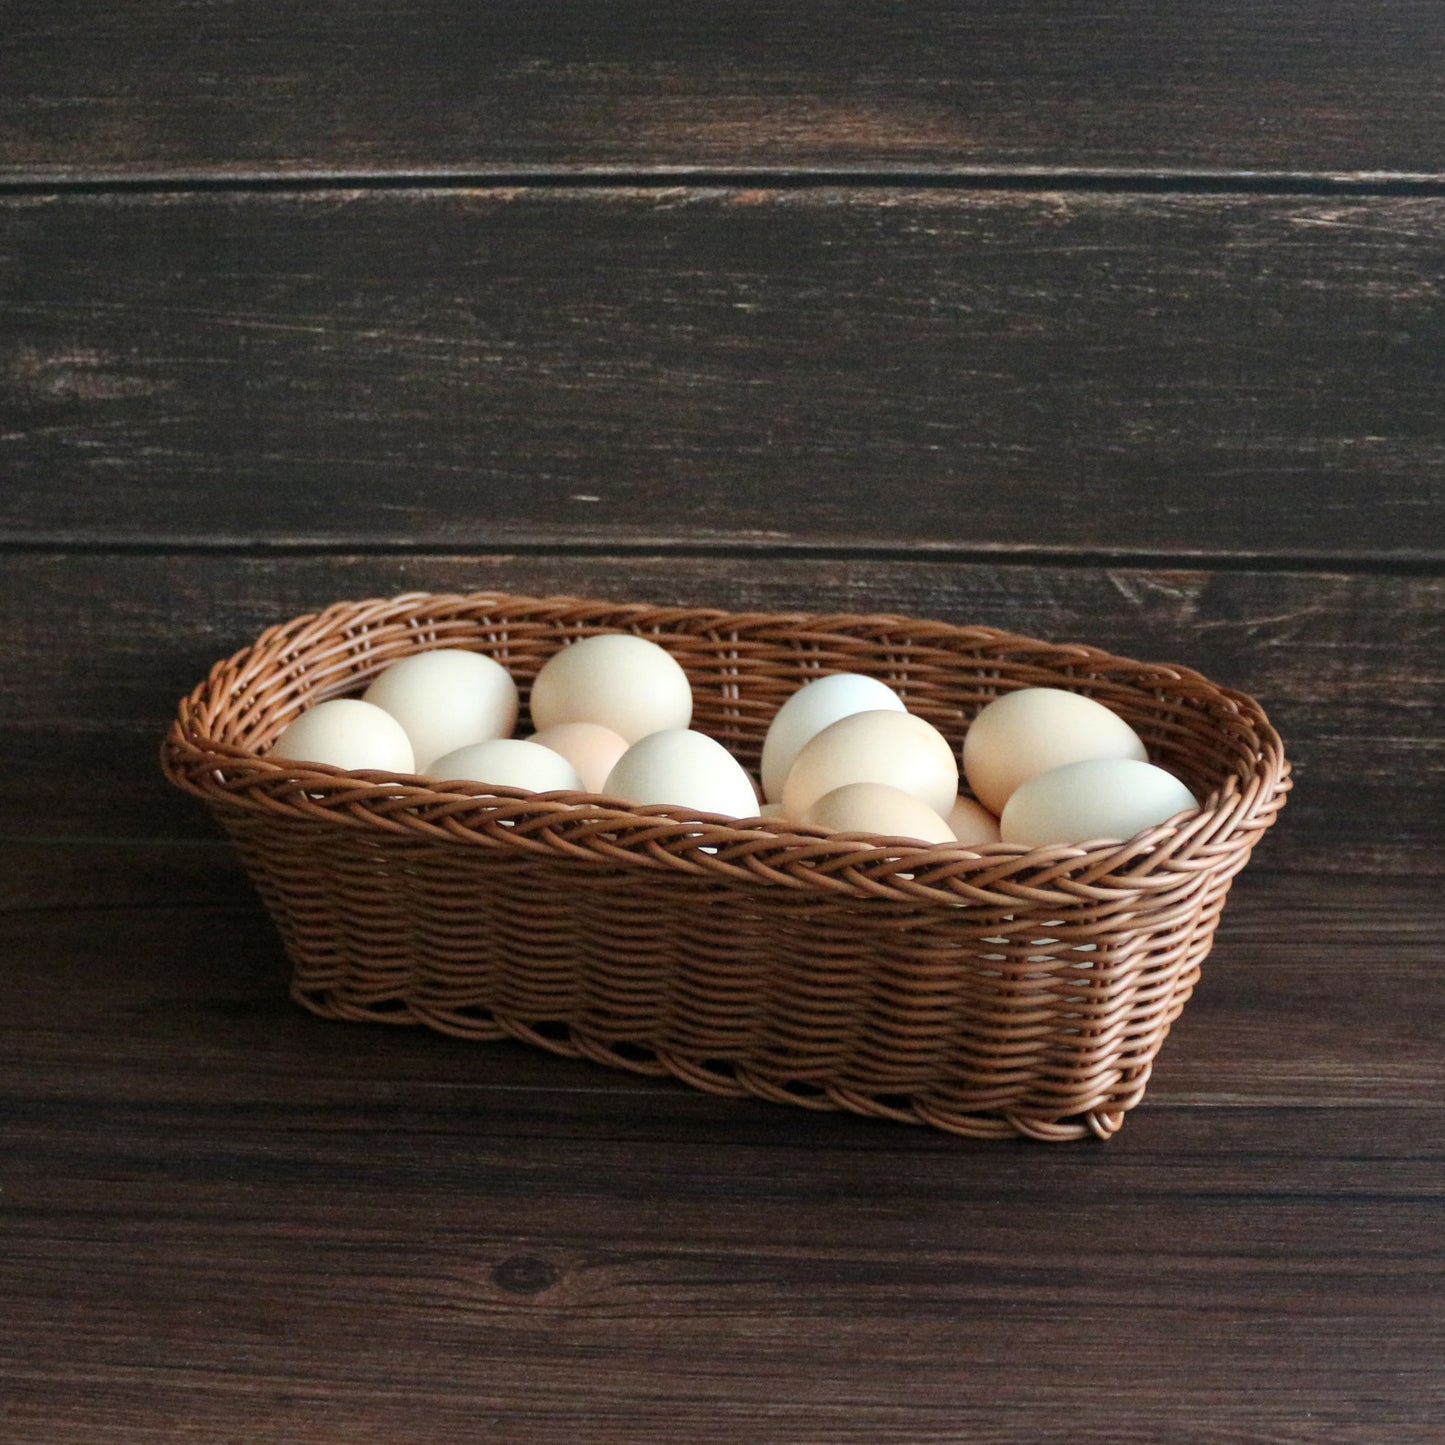 CVHOMEDECO. Rectangle Imitation Rattan Woven Cutlery Storage Organizer Fruit Basket Egg Basket Handmade Serving Basket for Kitchen Table, Cabinet, Pantry. Brown.